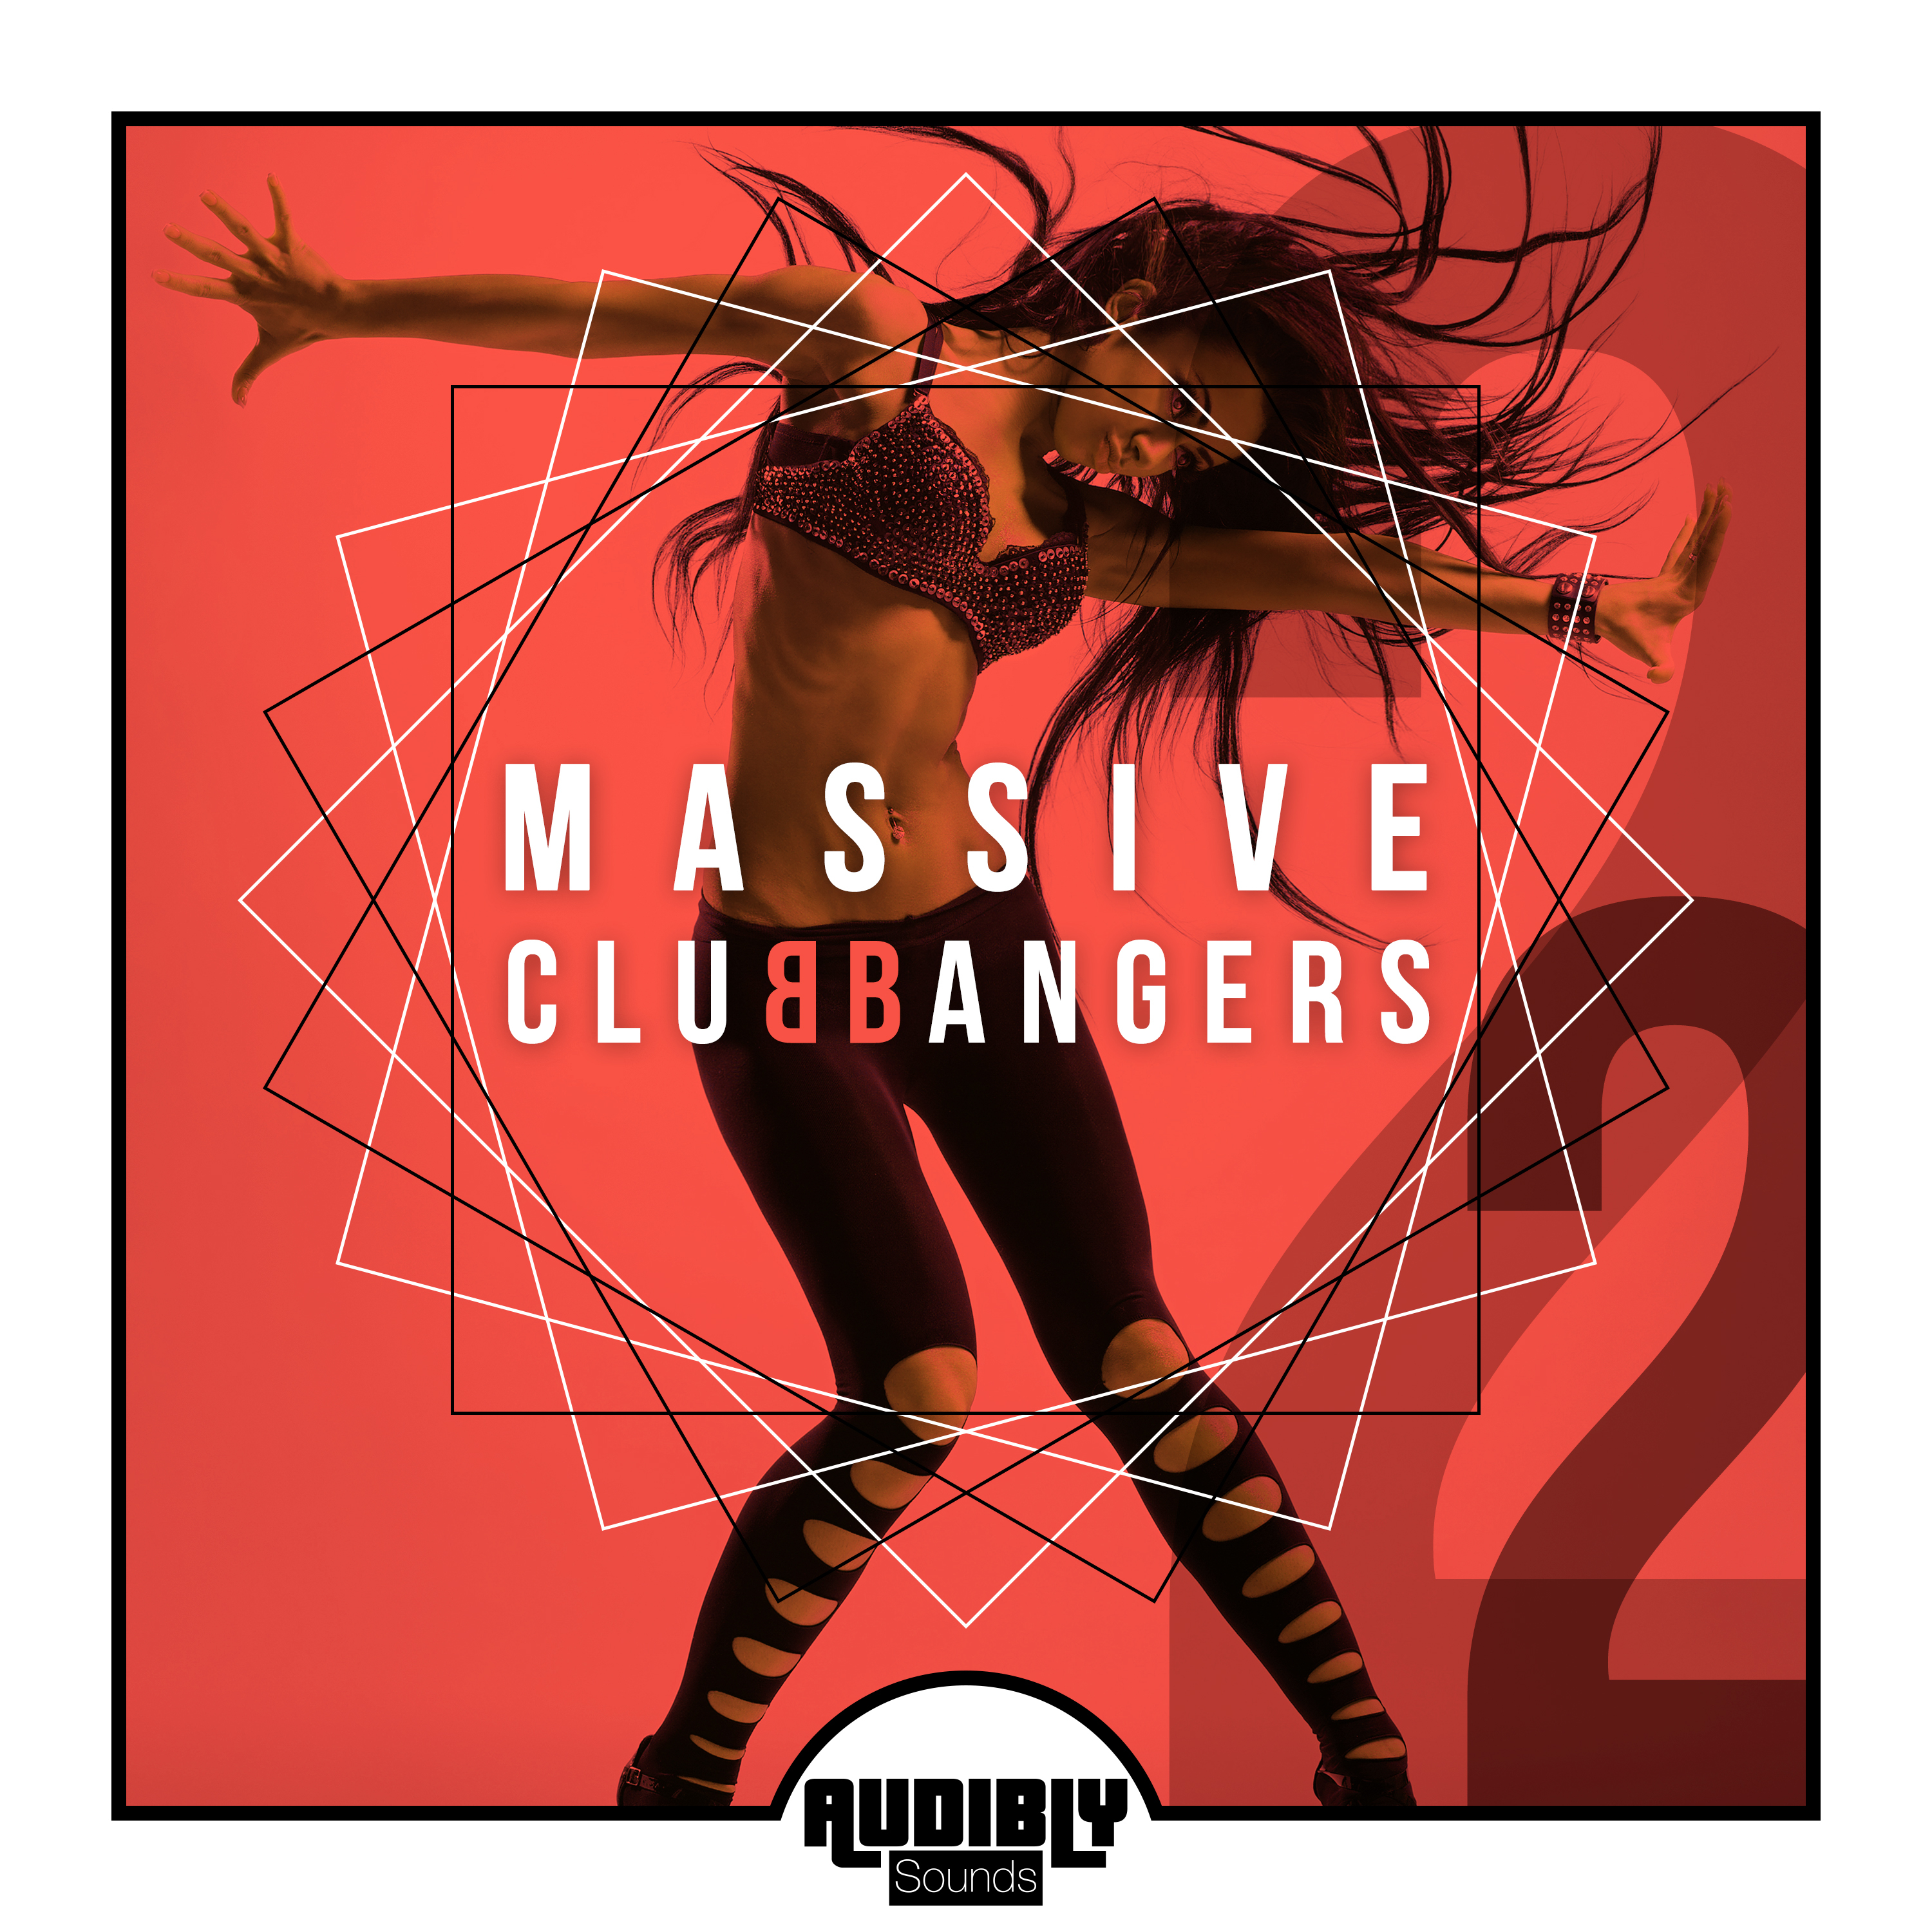 Massive Club Bangers, Vol. 2